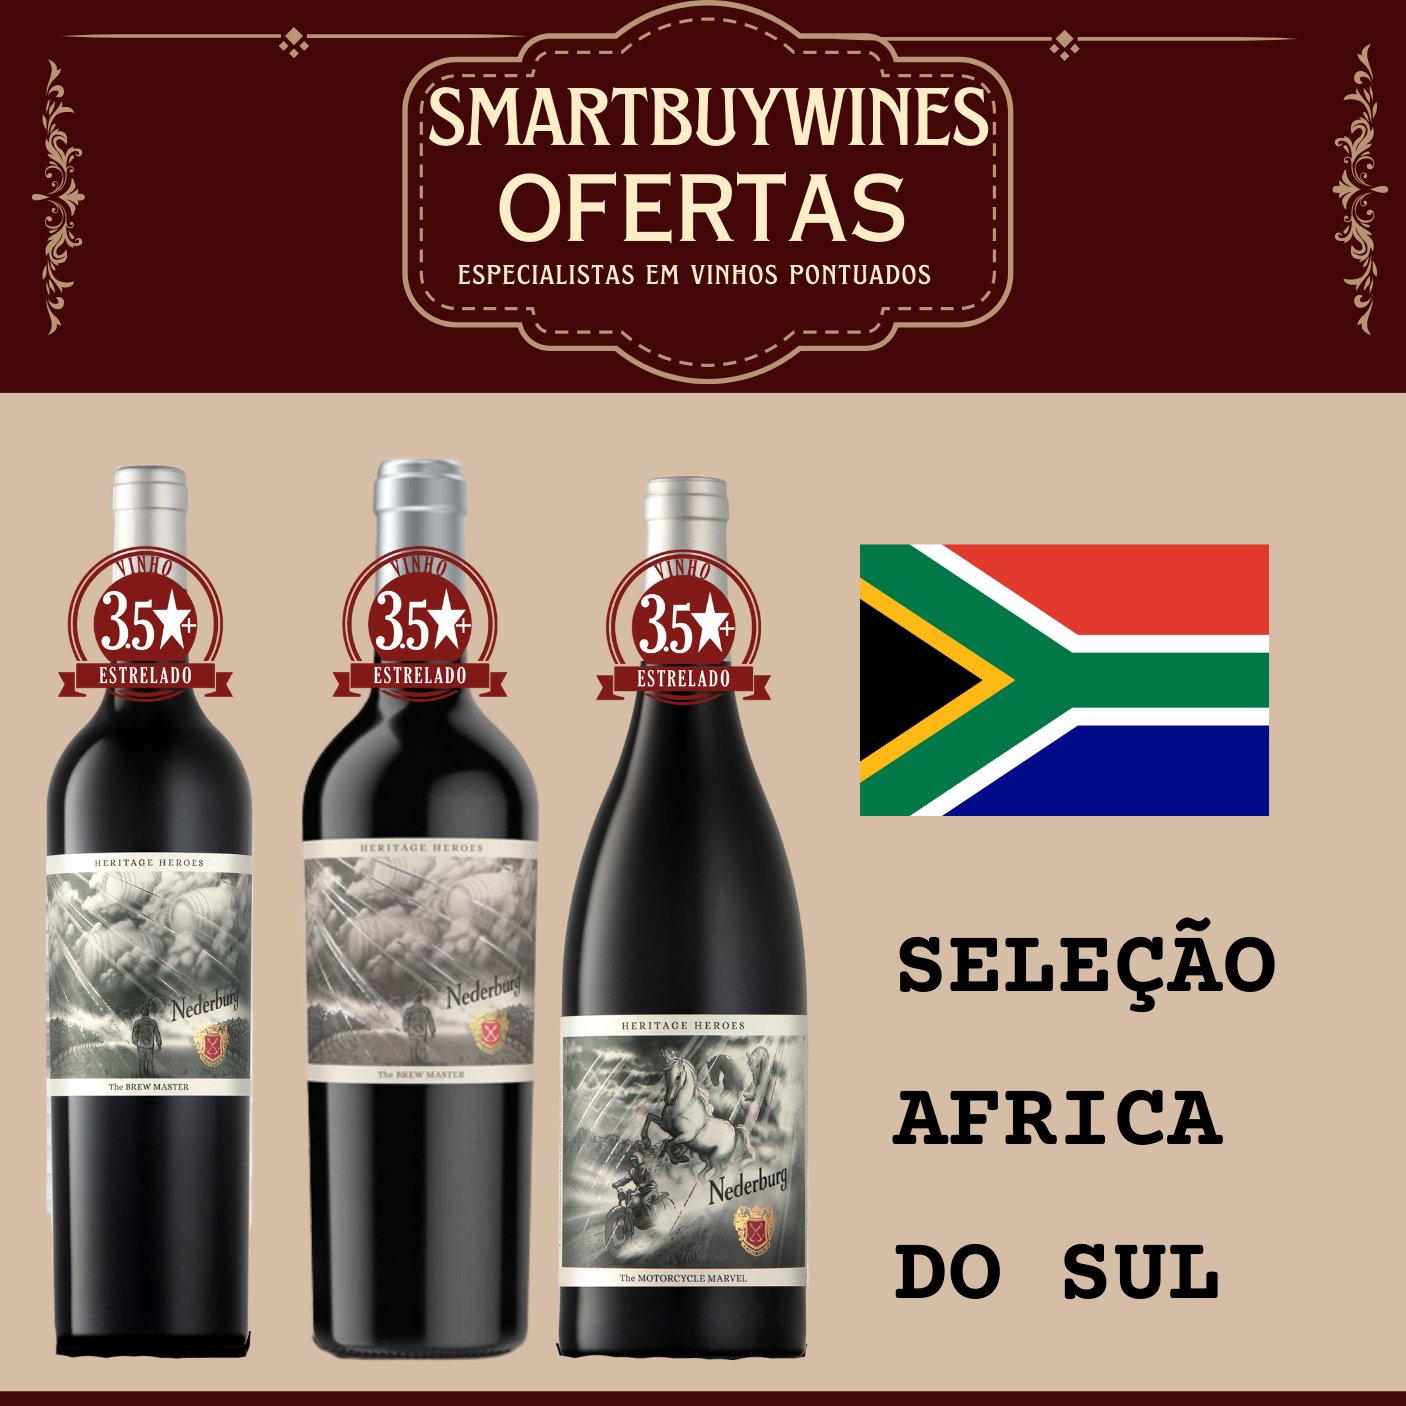 Seleção em oferta - Africa do Sul - caixa de 3 vinhos - SmartBuyWines.com.br